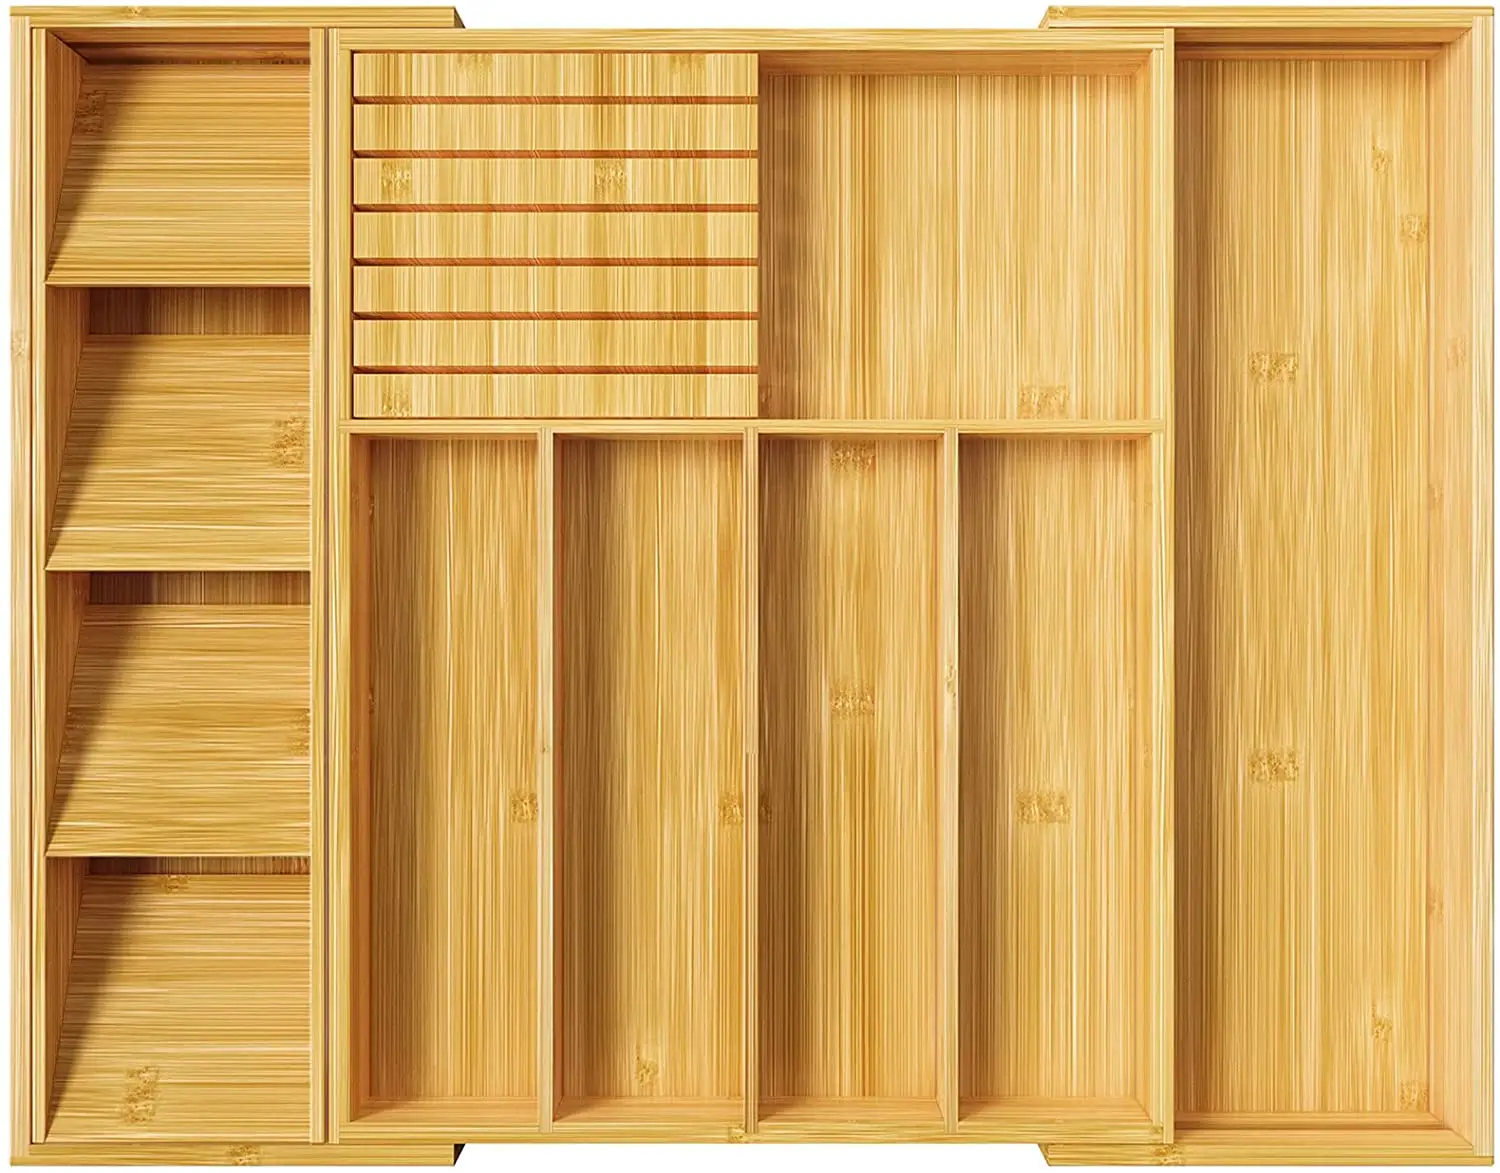 Portacuchillos de cocina, organizador de cajones de madera con divisor, soporte extensible para utensilios y bandeja para cubiertos